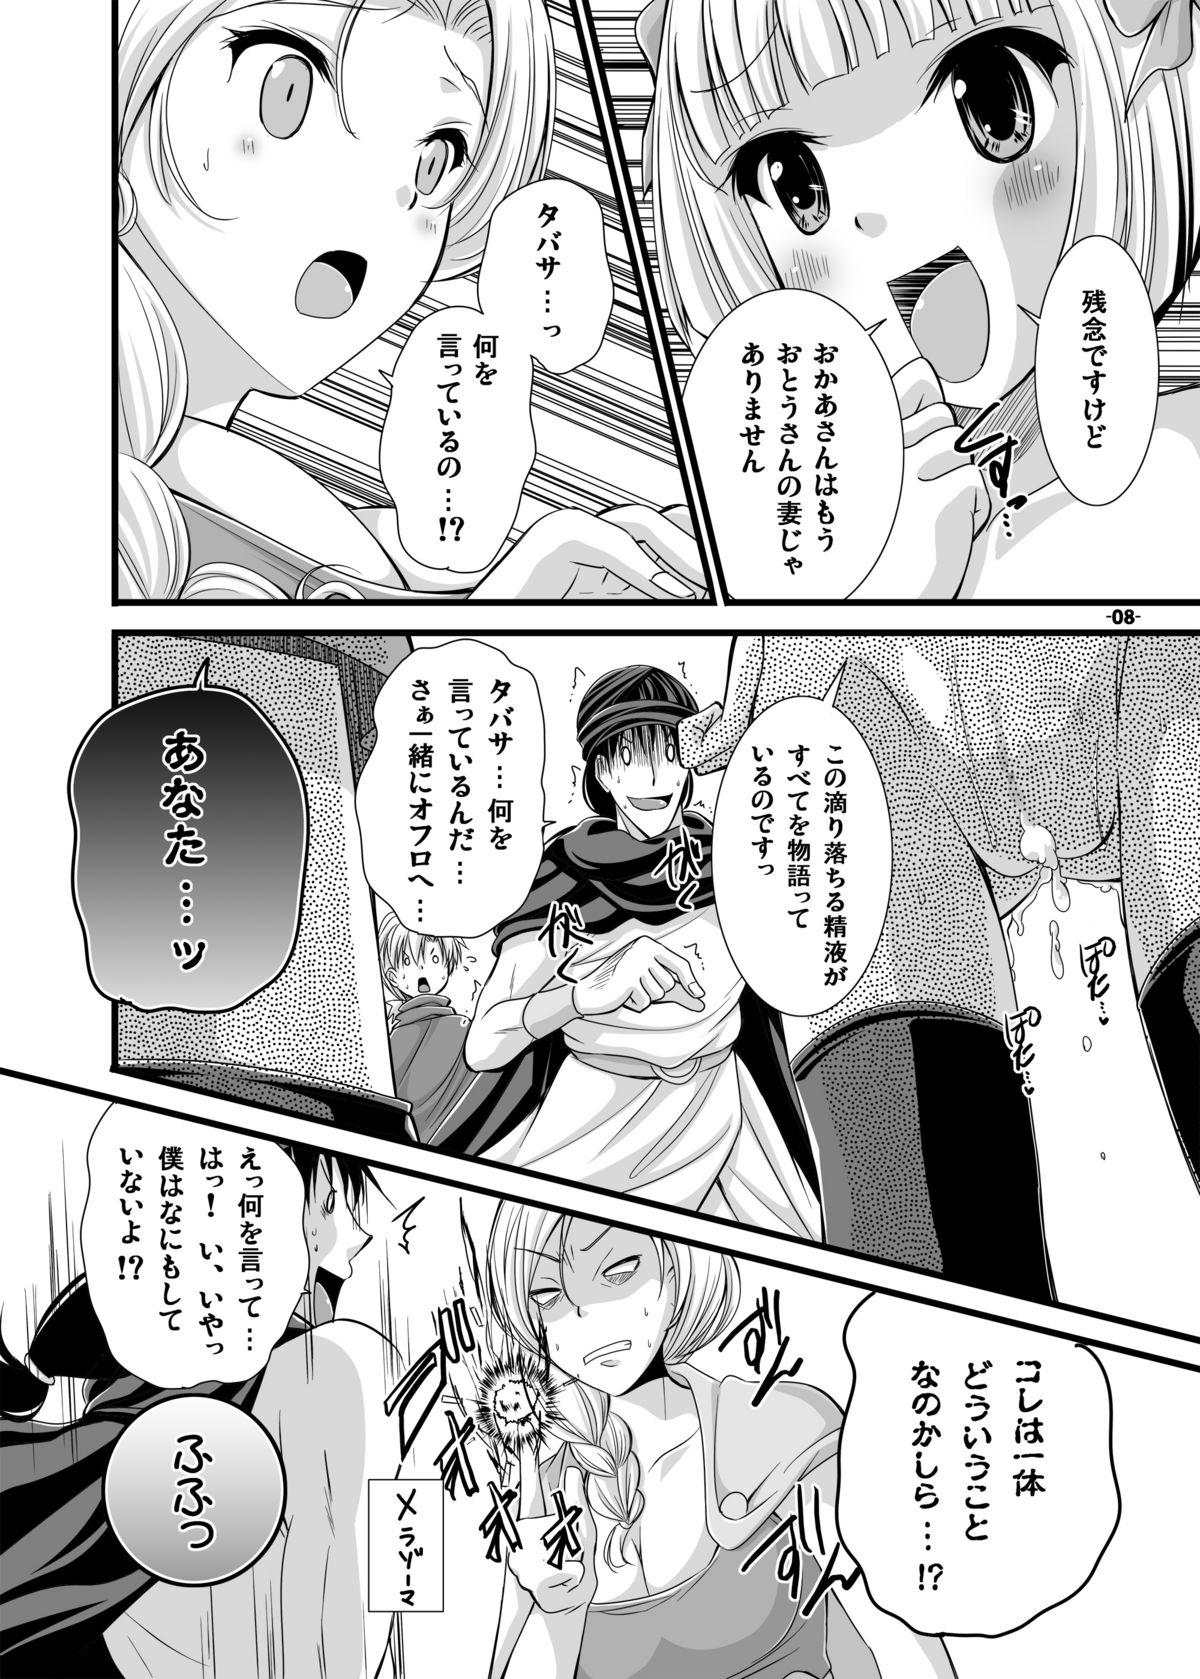 Milk Battle no Ato ni... 3 - Dragon quest v Omegle - Page 8